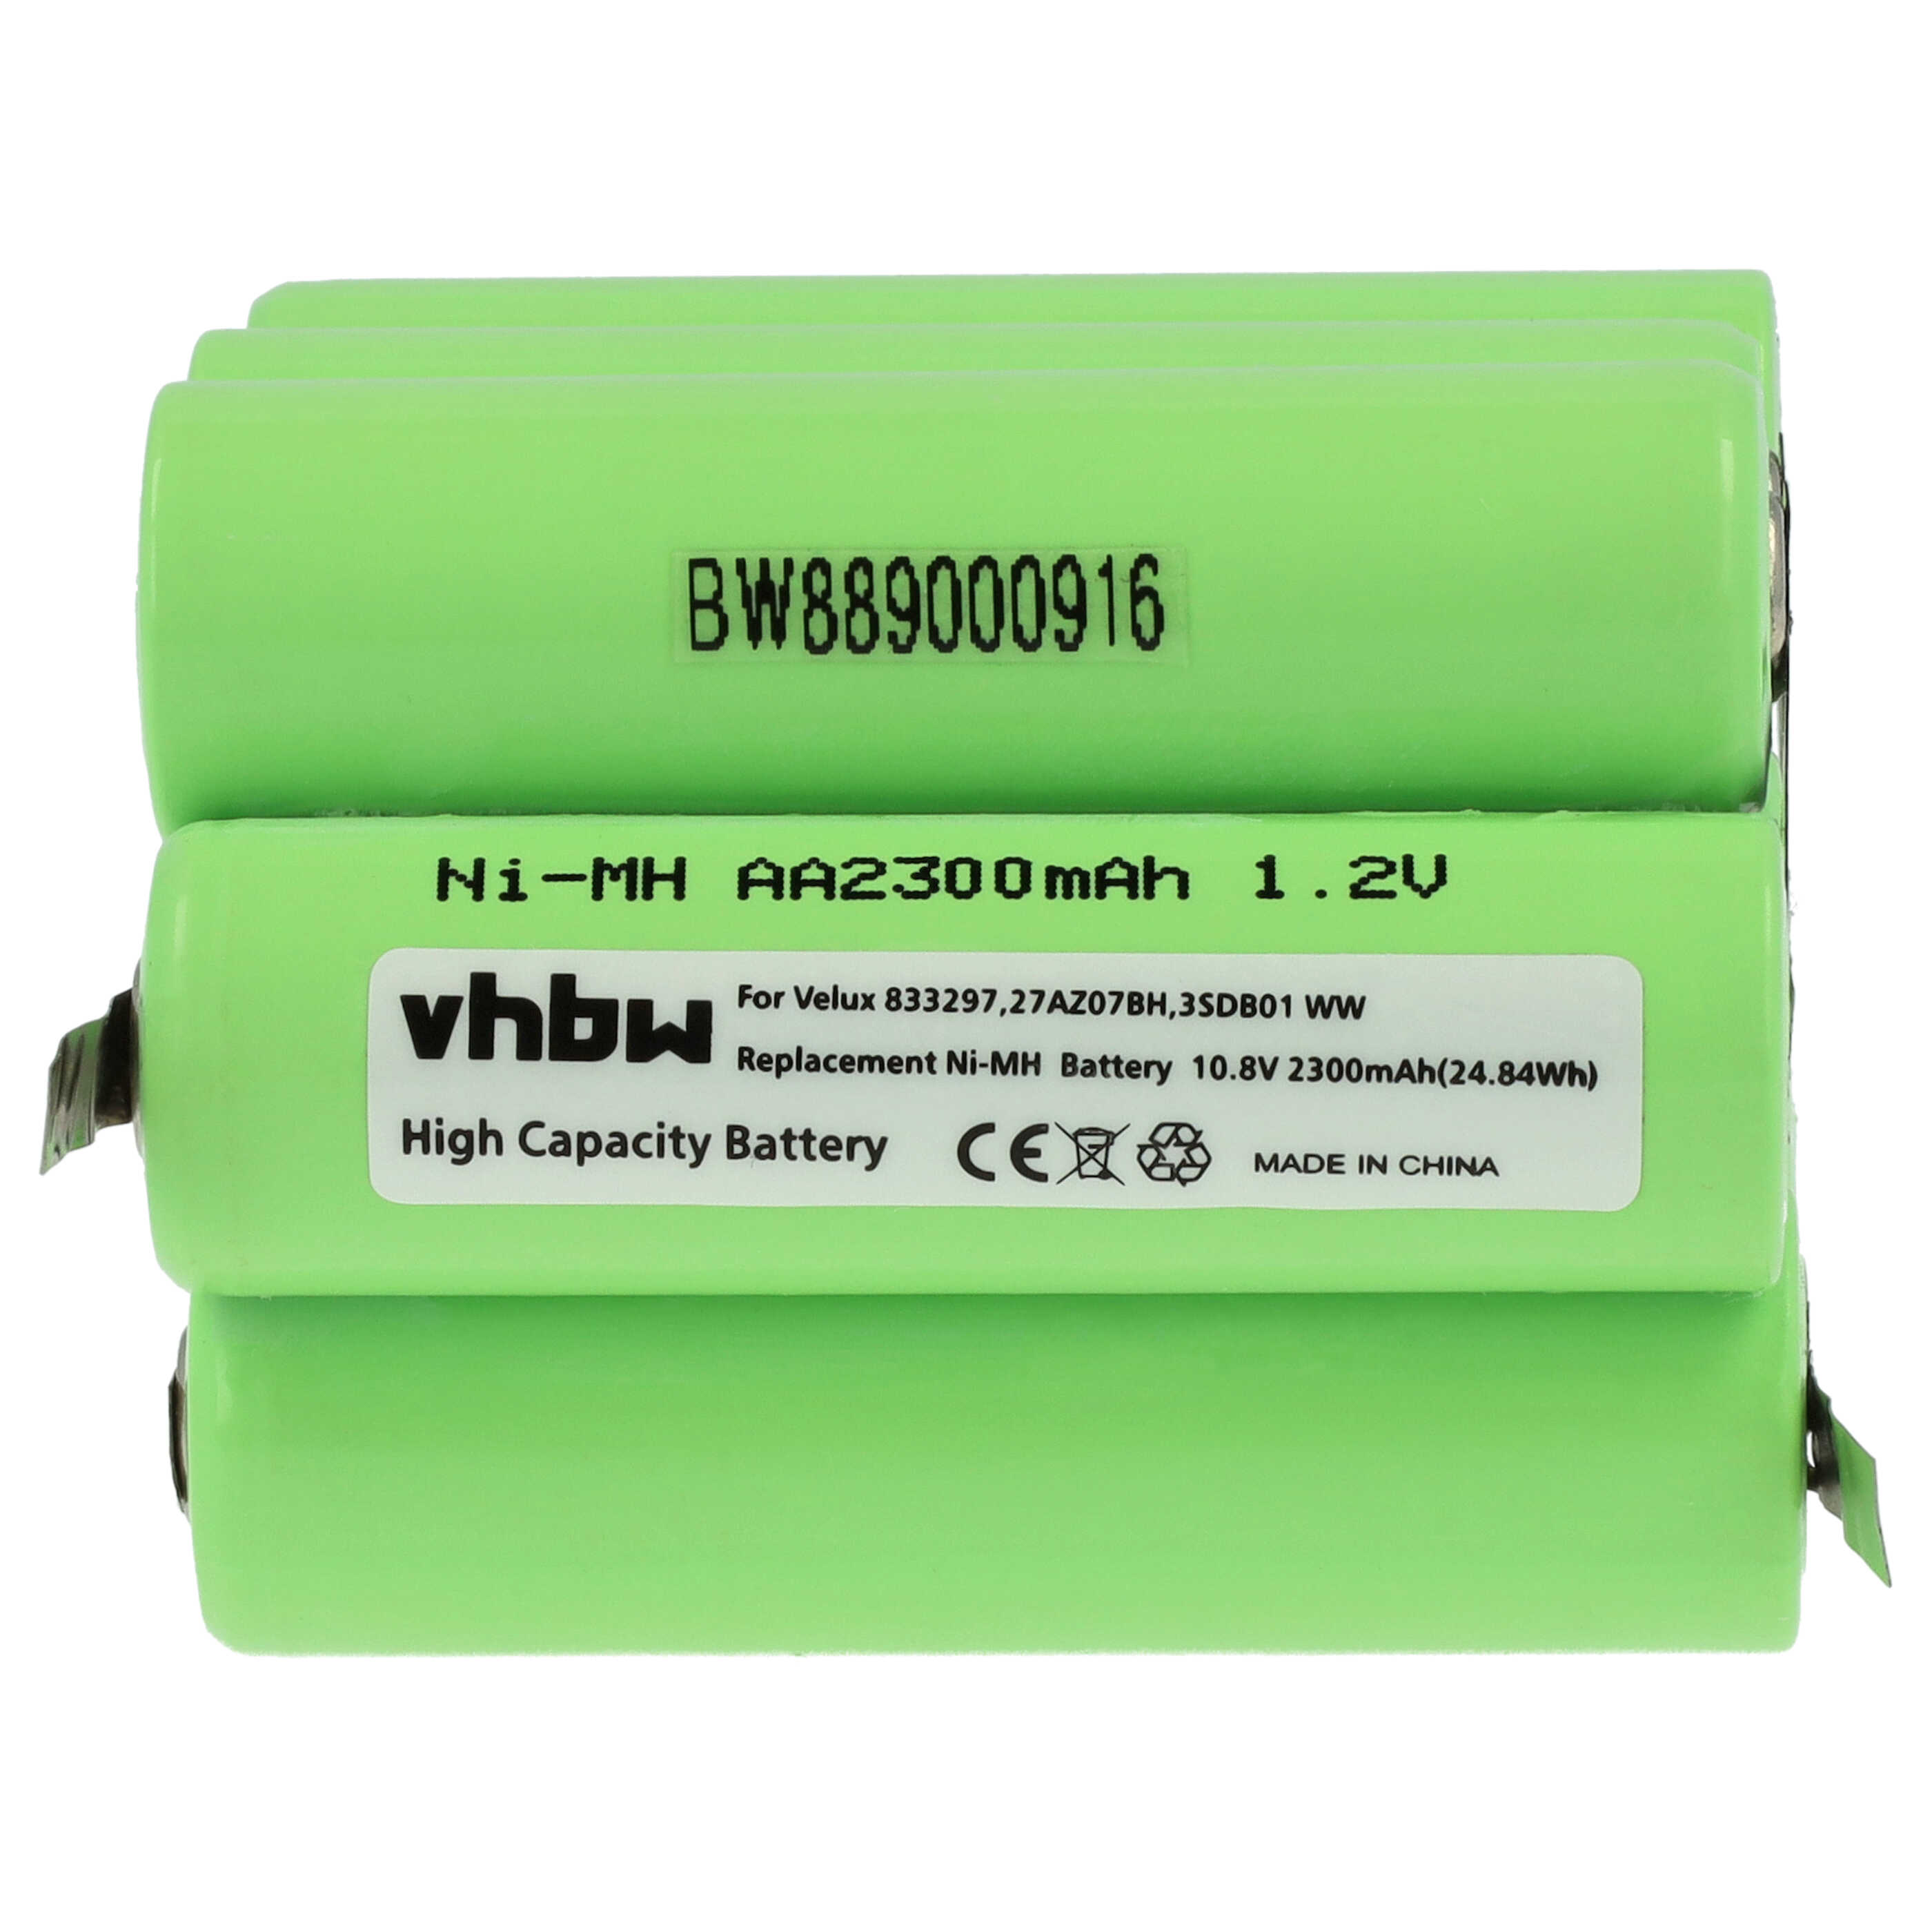 Batería reemplaza 833297, 27AZ07BH, 3SD B01 WW para persiana claraboya Velux - 2300 mAh 10,8 V NiMH